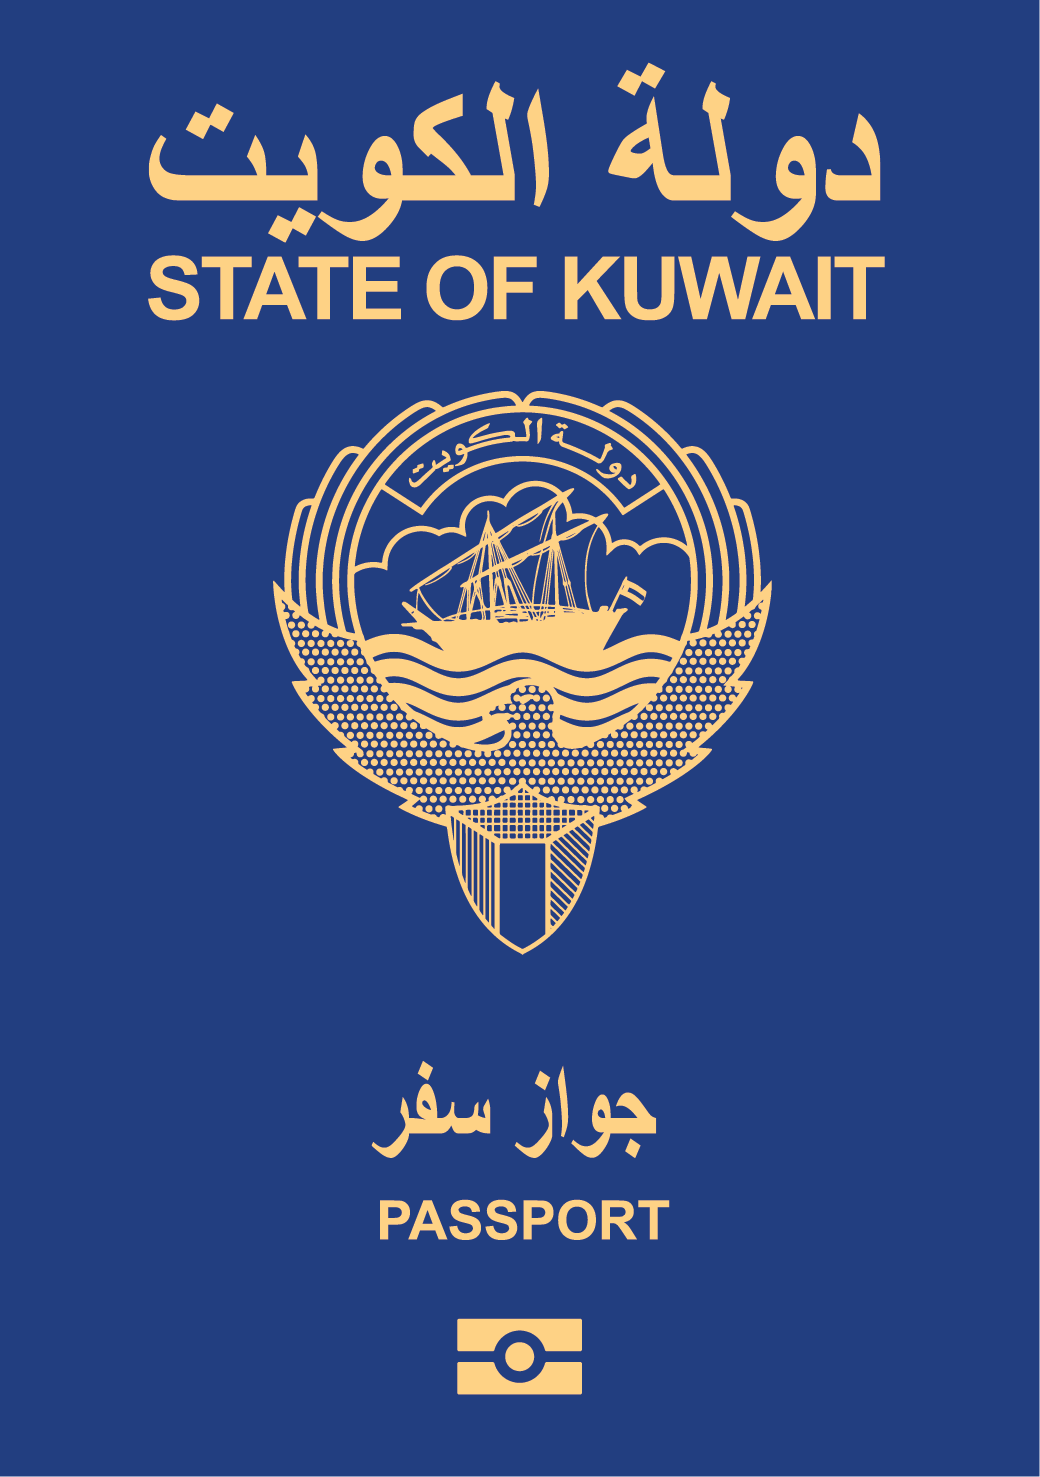 कुवैत वीज़ा